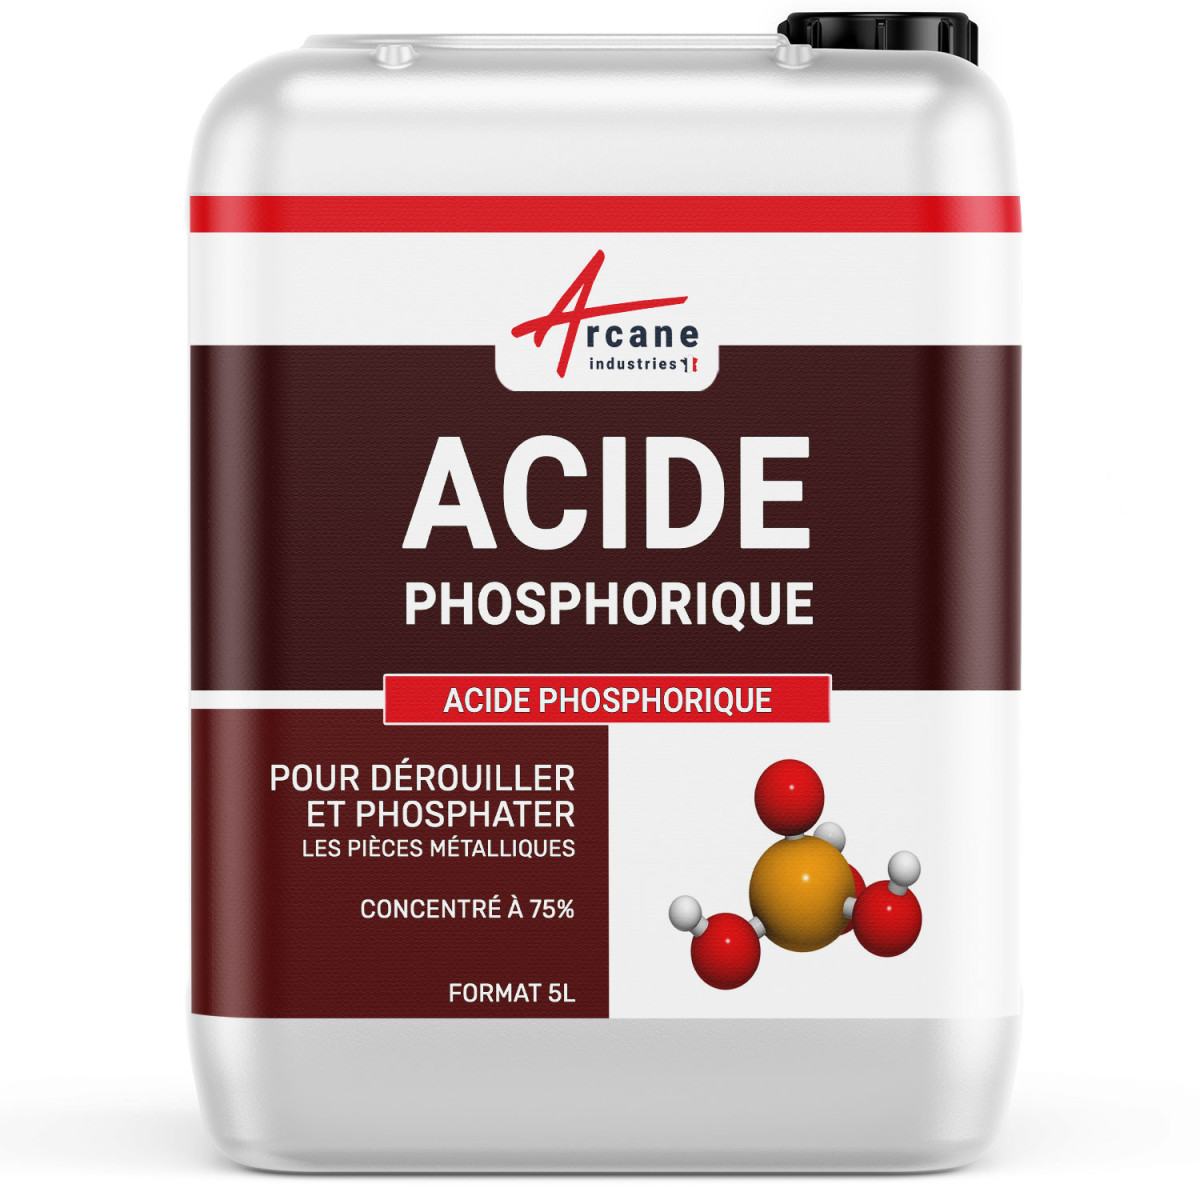 Acide phosphorique pour dérouiller et phosphater les pièces métalliques